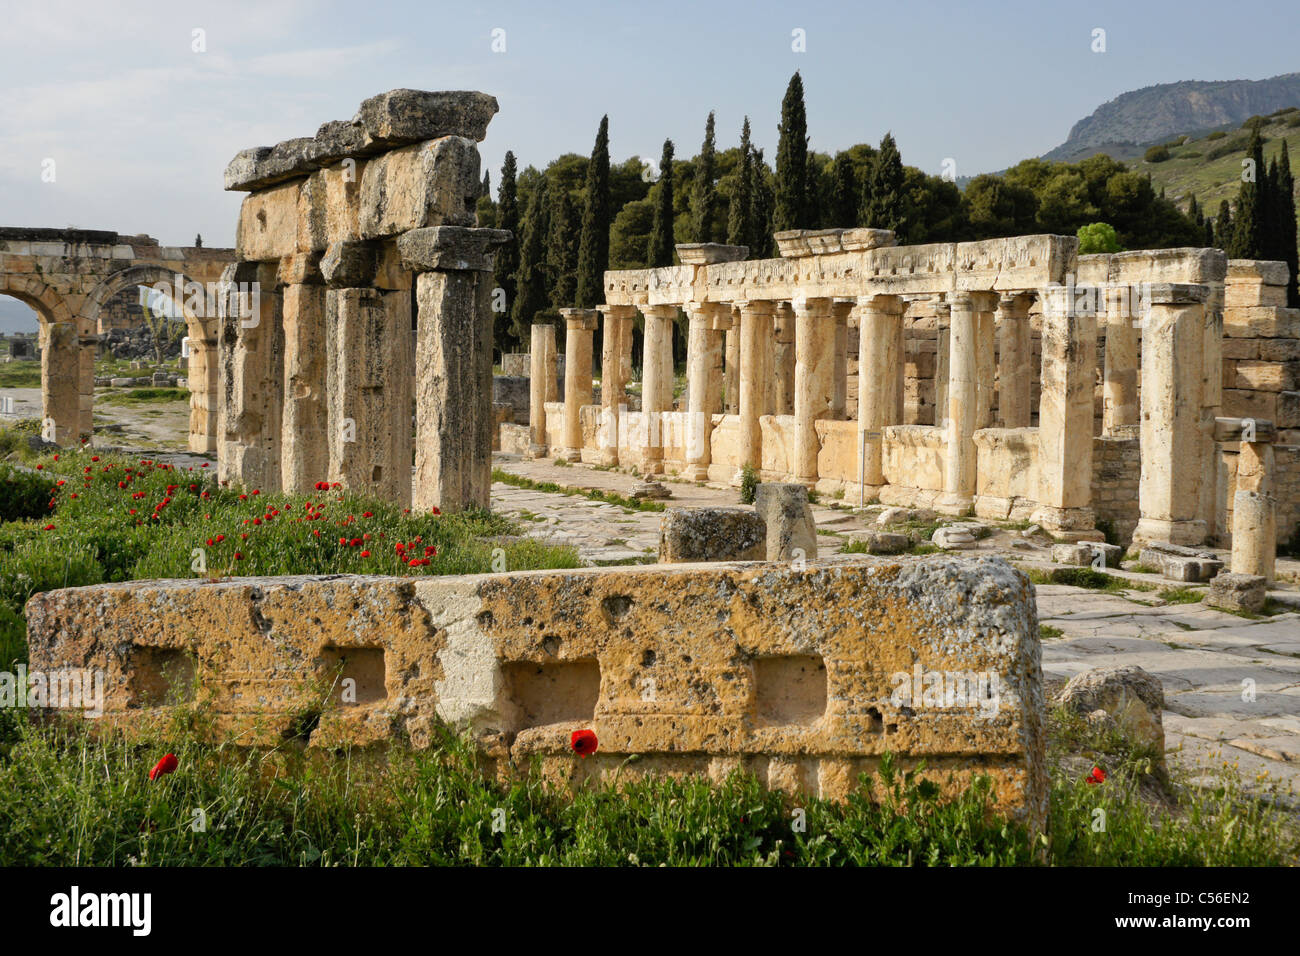 La rue à colonnade et de latrines, Hierapolis-Pamukkale, Turquie Banque D'Images